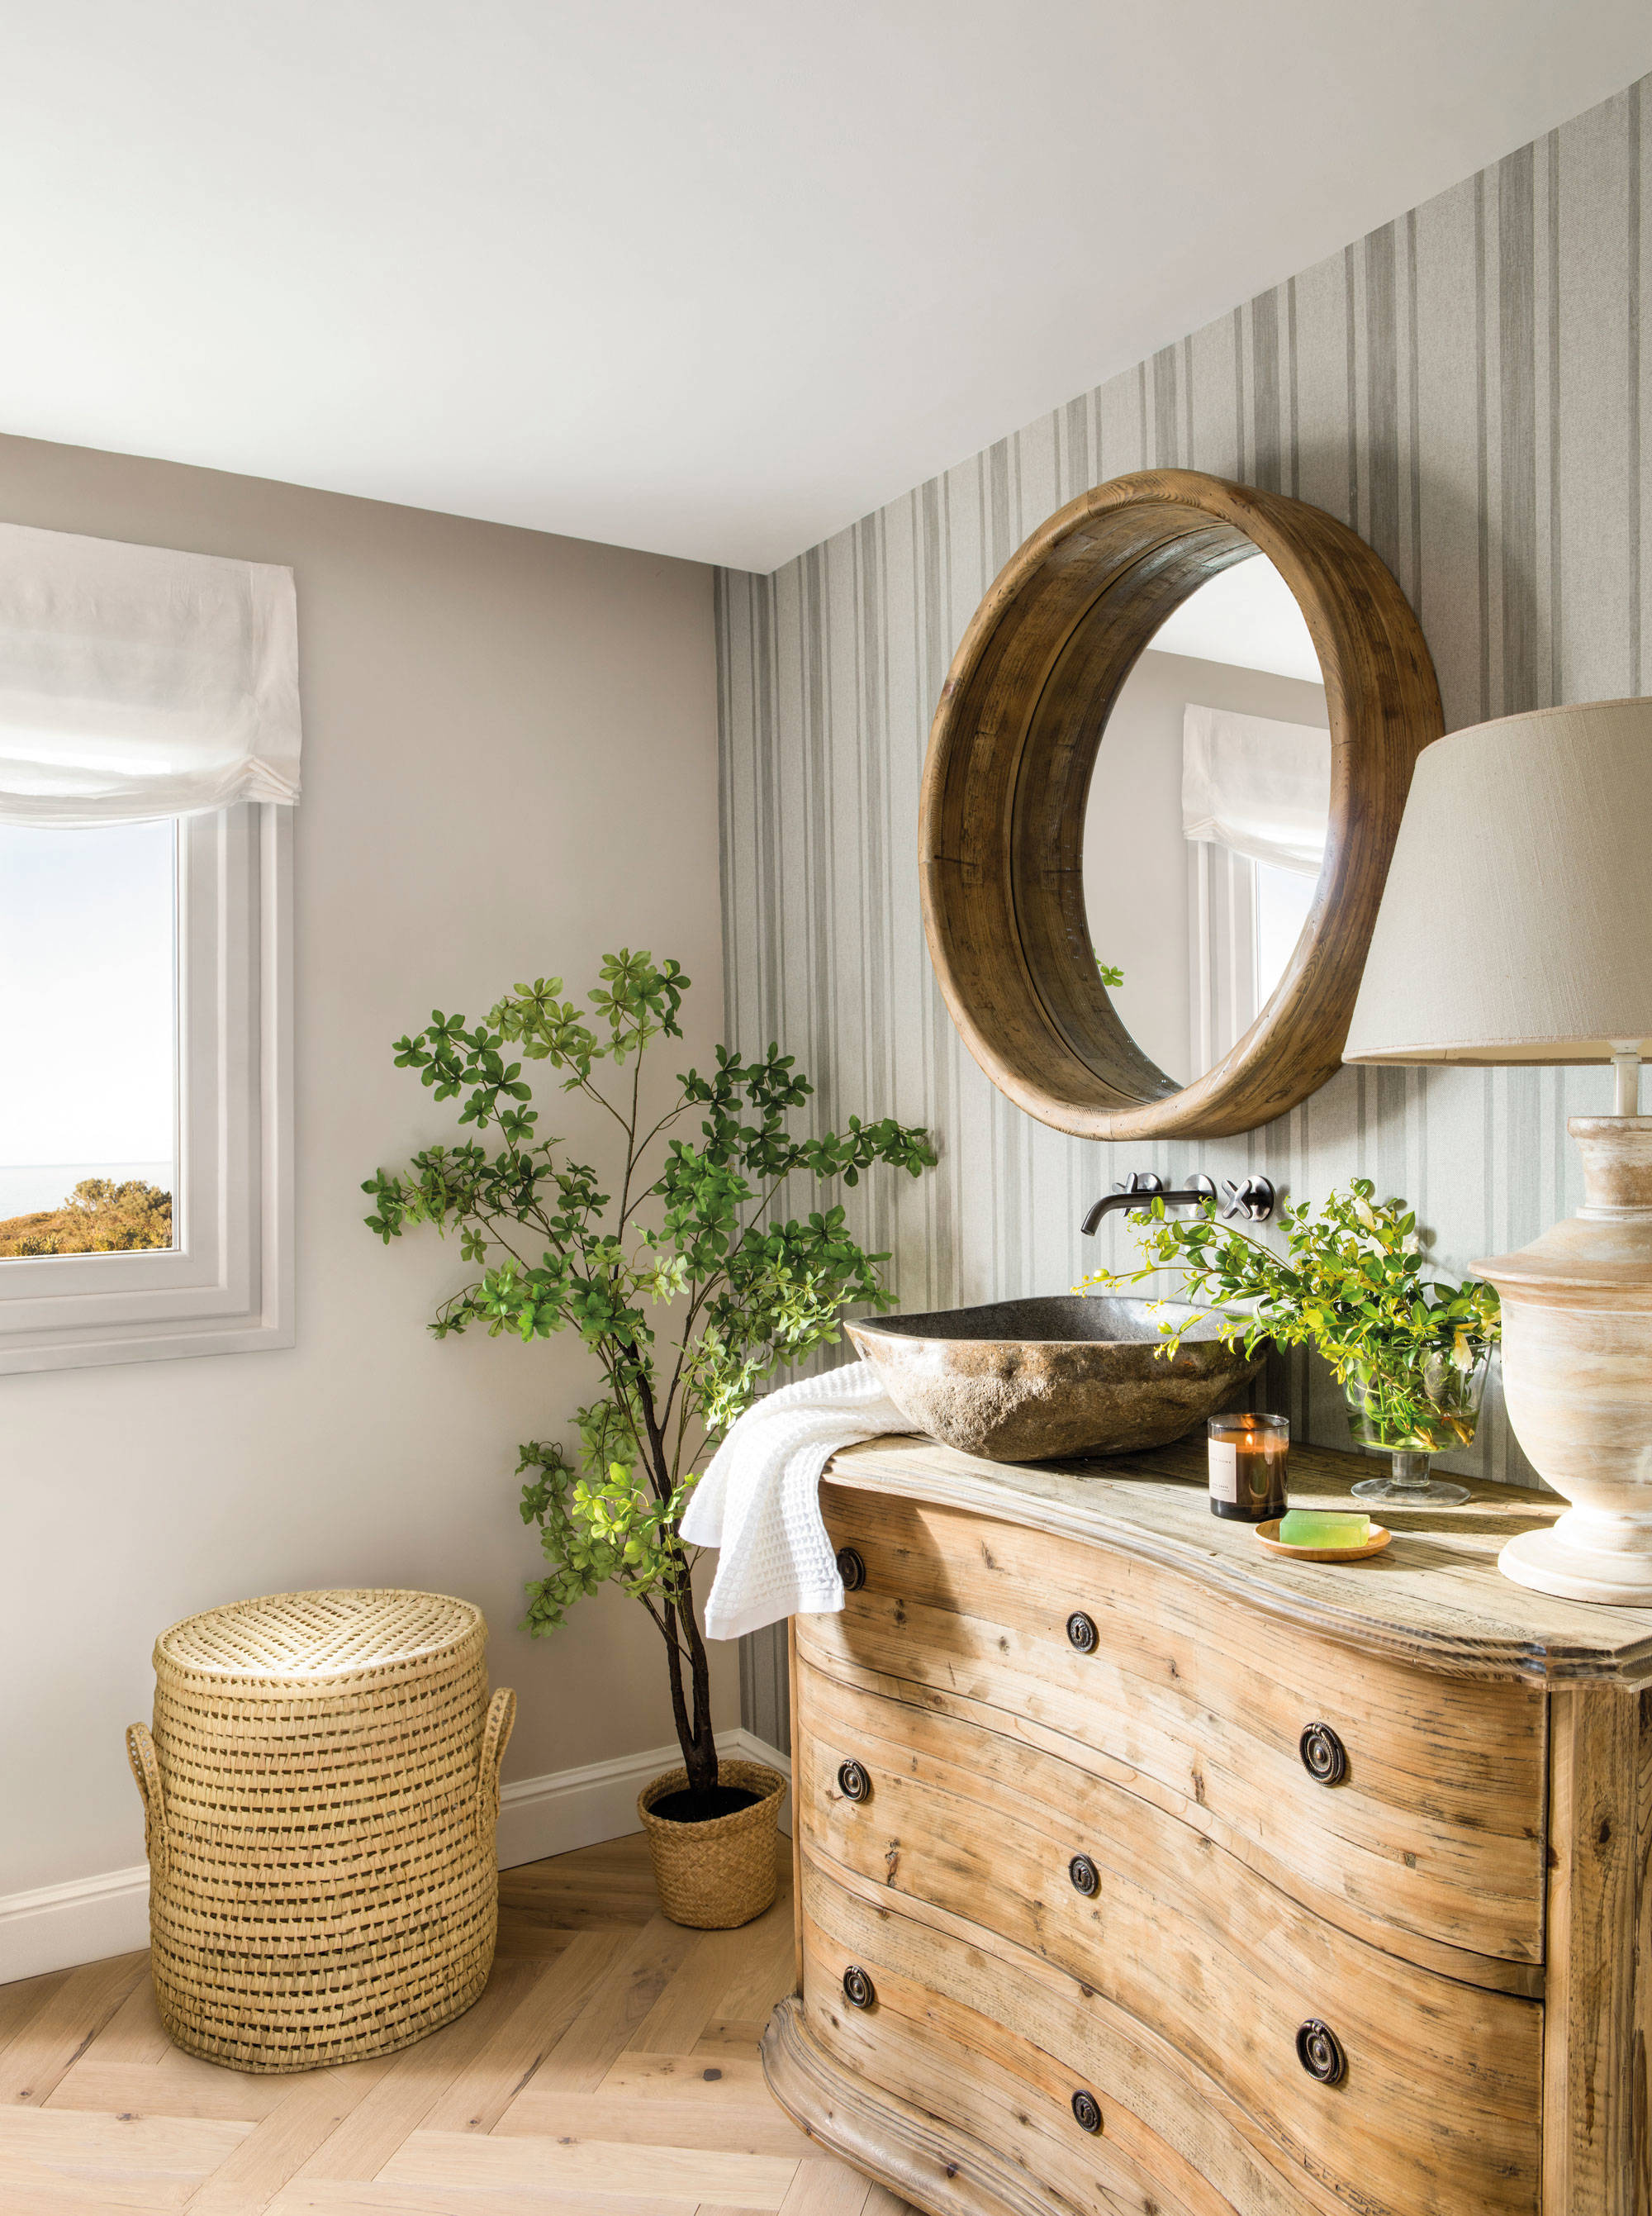 Baño de estilo rústico con mueble de madera y espejo redondo